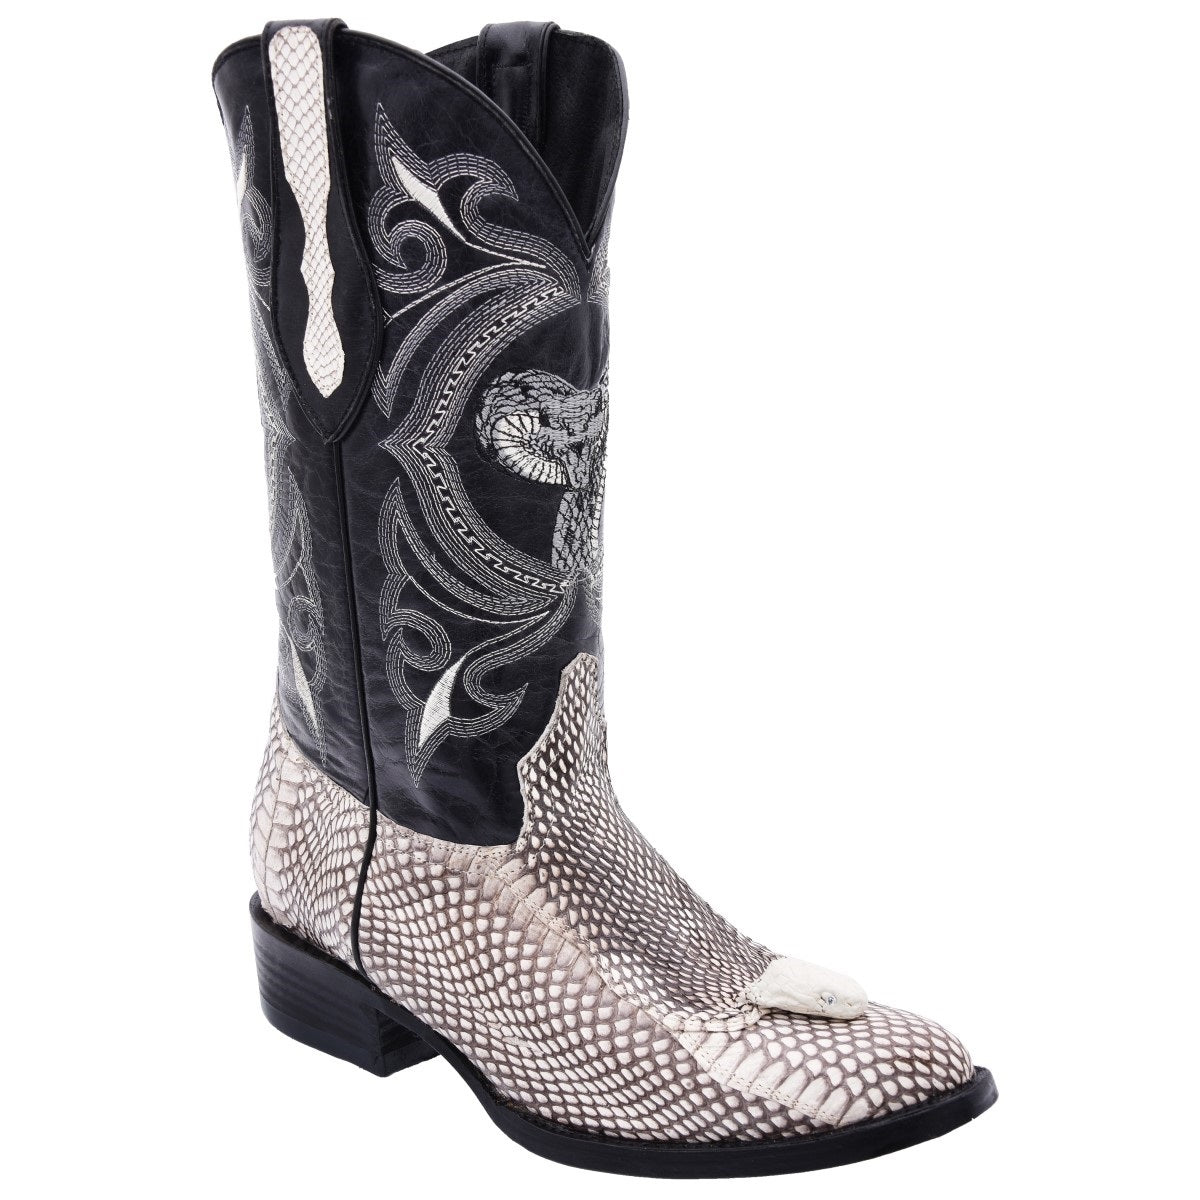 Botas Vaqueras TM-WD0252 - Western Boots